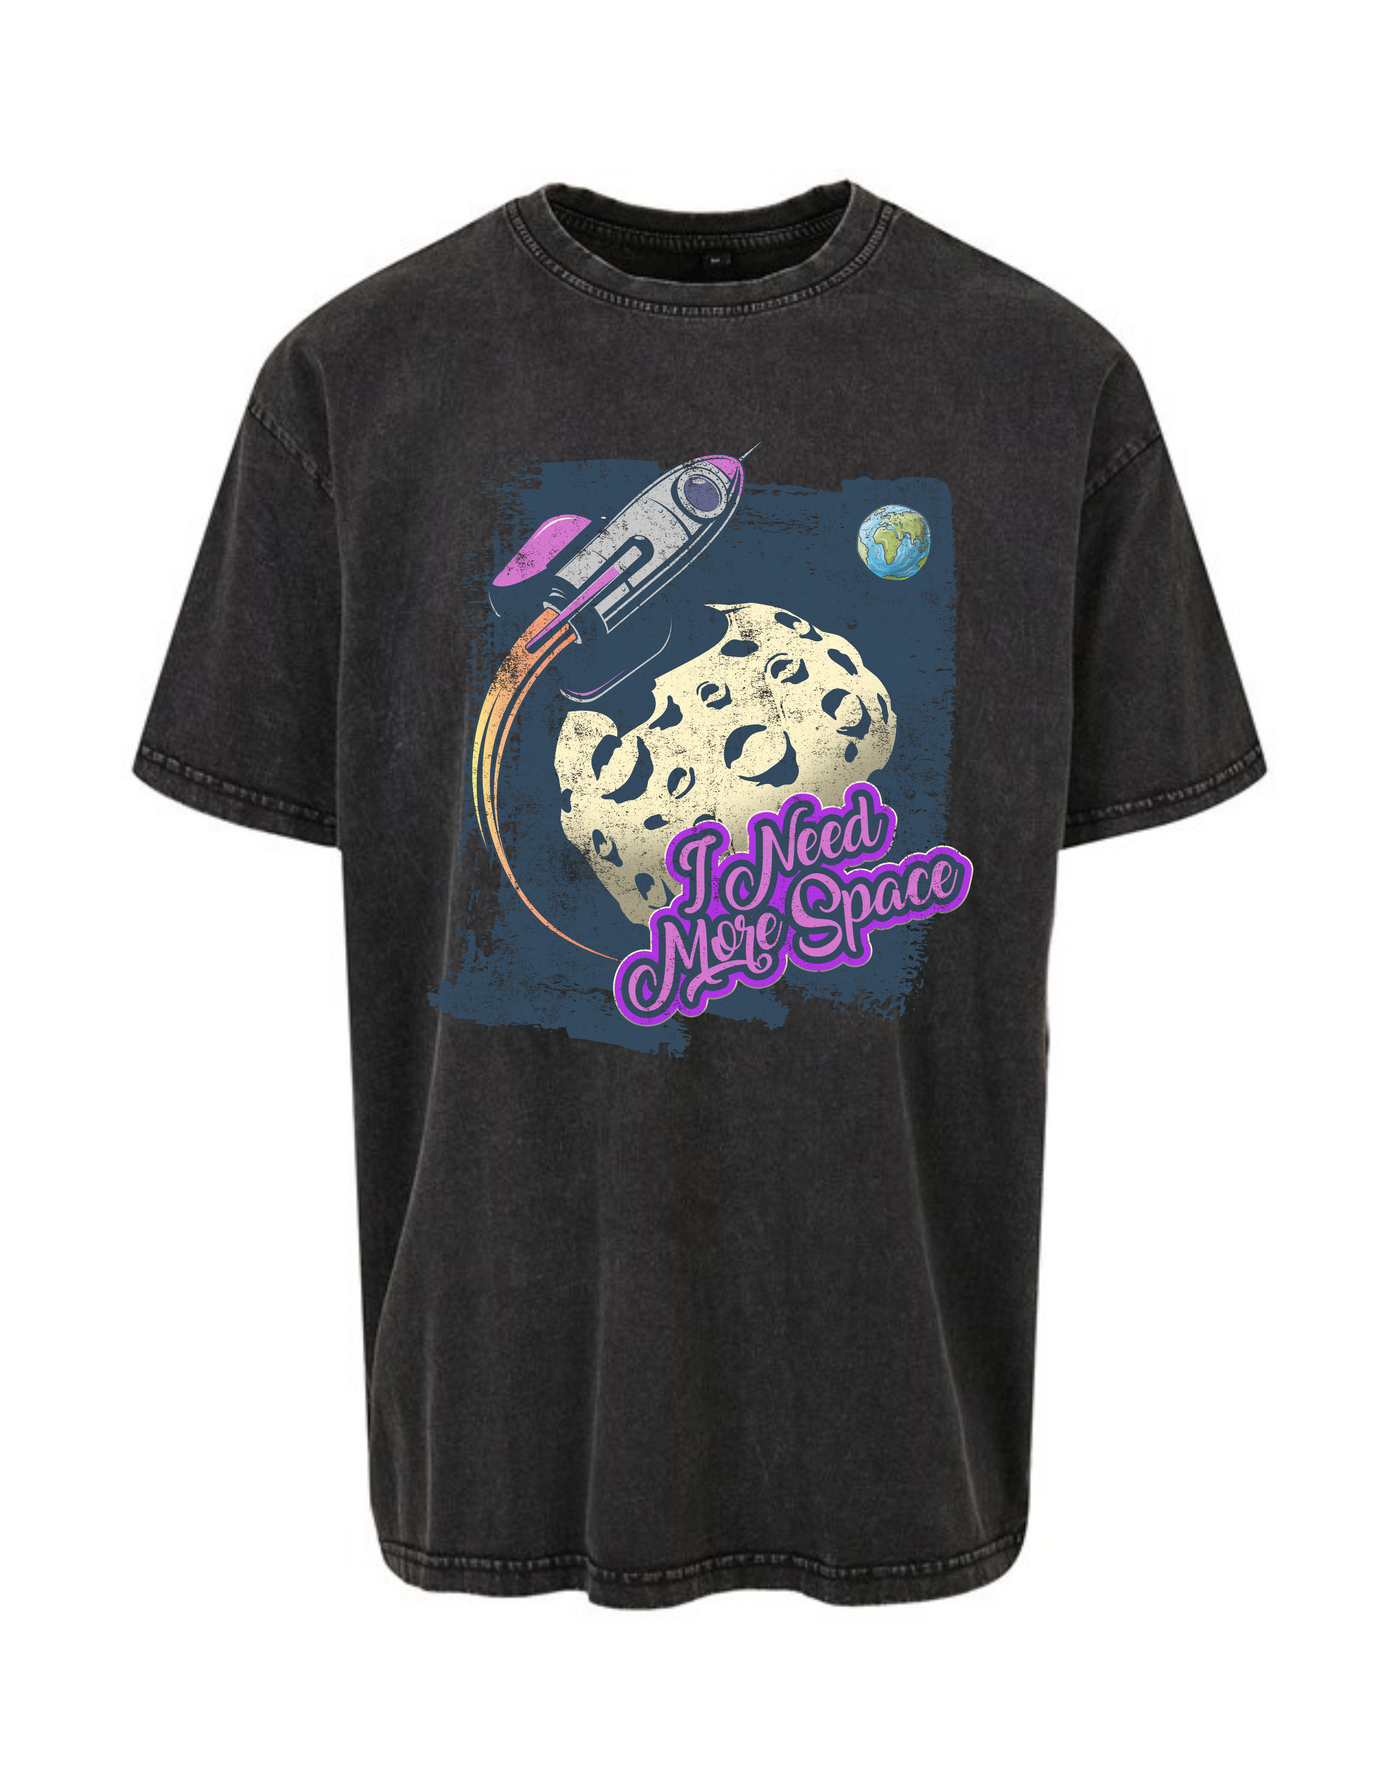 Black "I Need More Space" Unisex Acid Wash T-Shirt